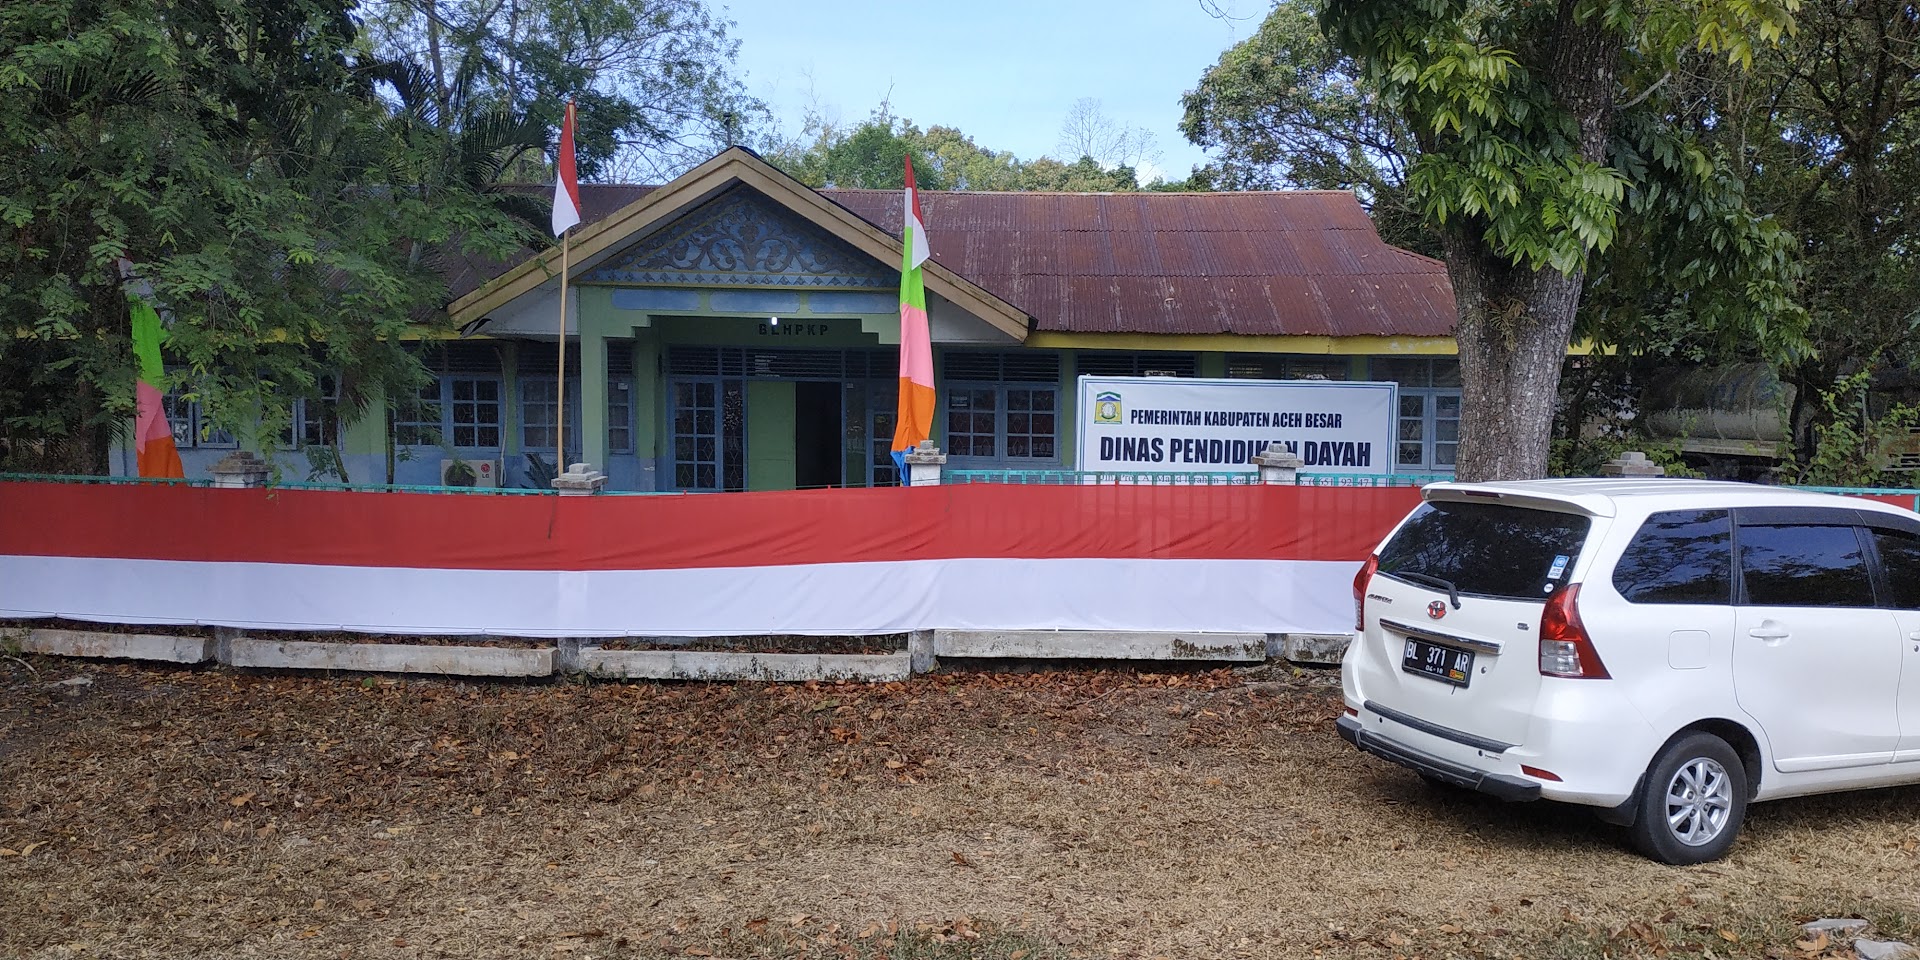 Dinas Pendidikan Dayah Kab Aceh Besar Photo